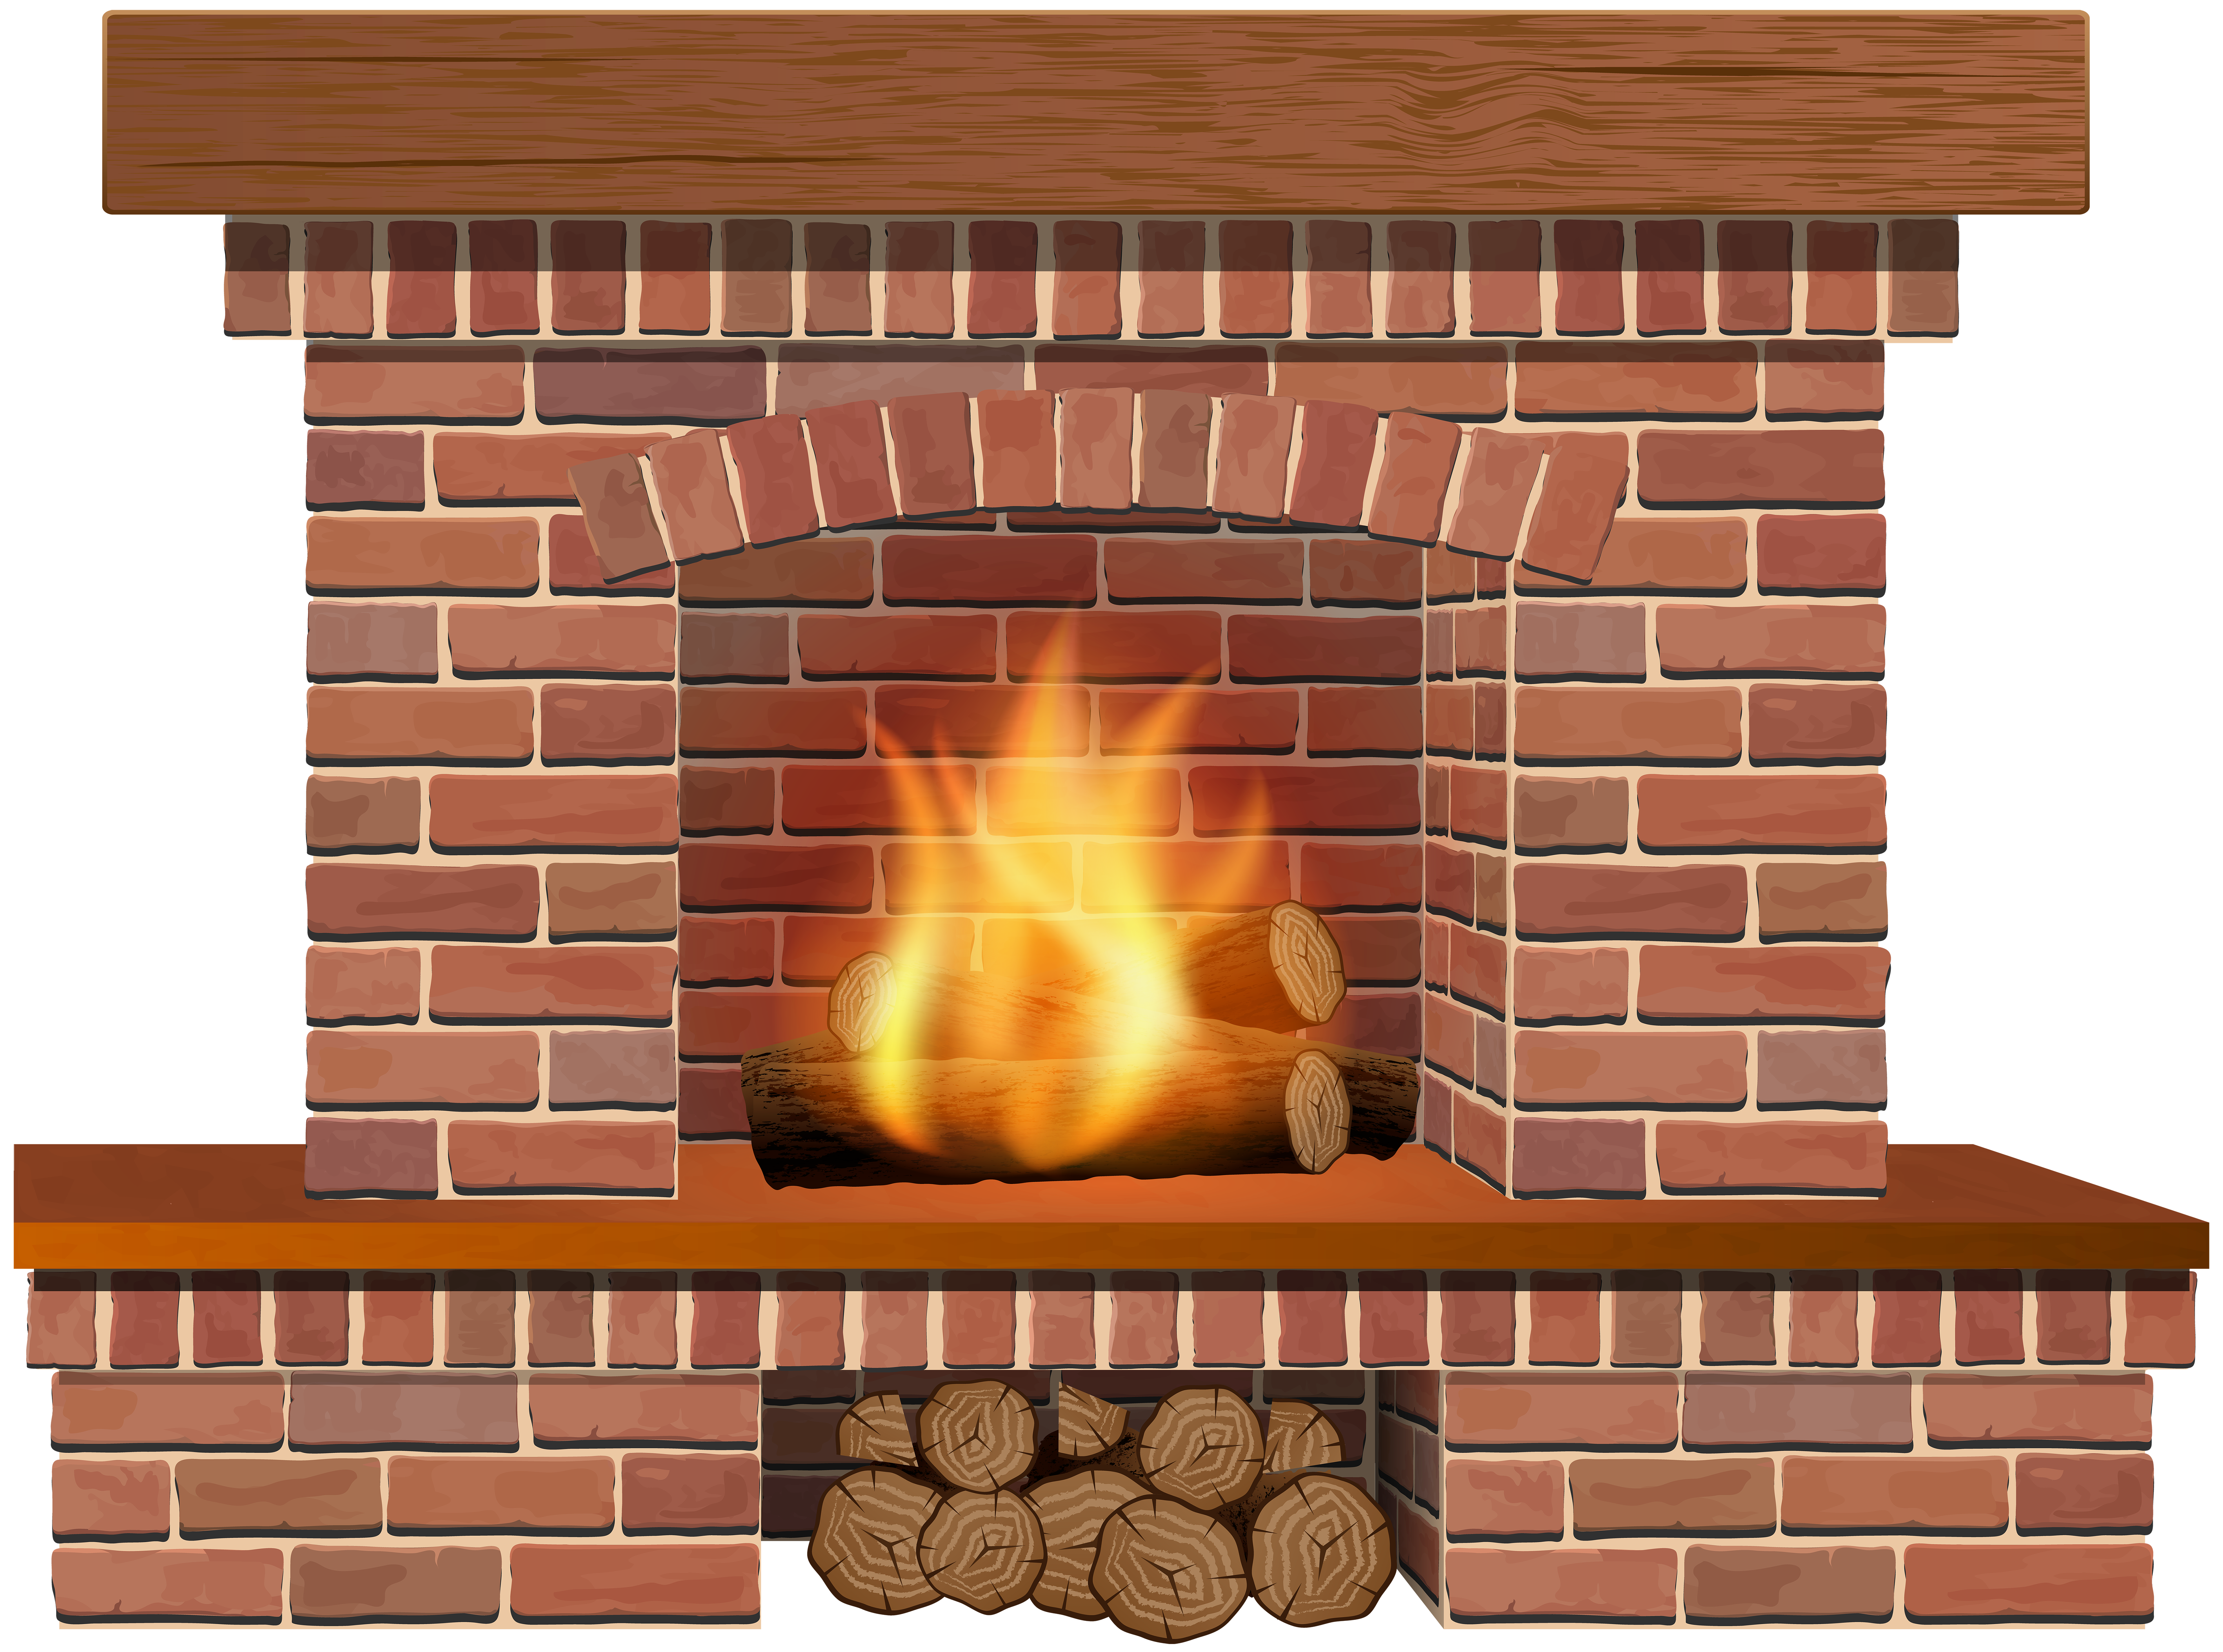 clip art fireplace